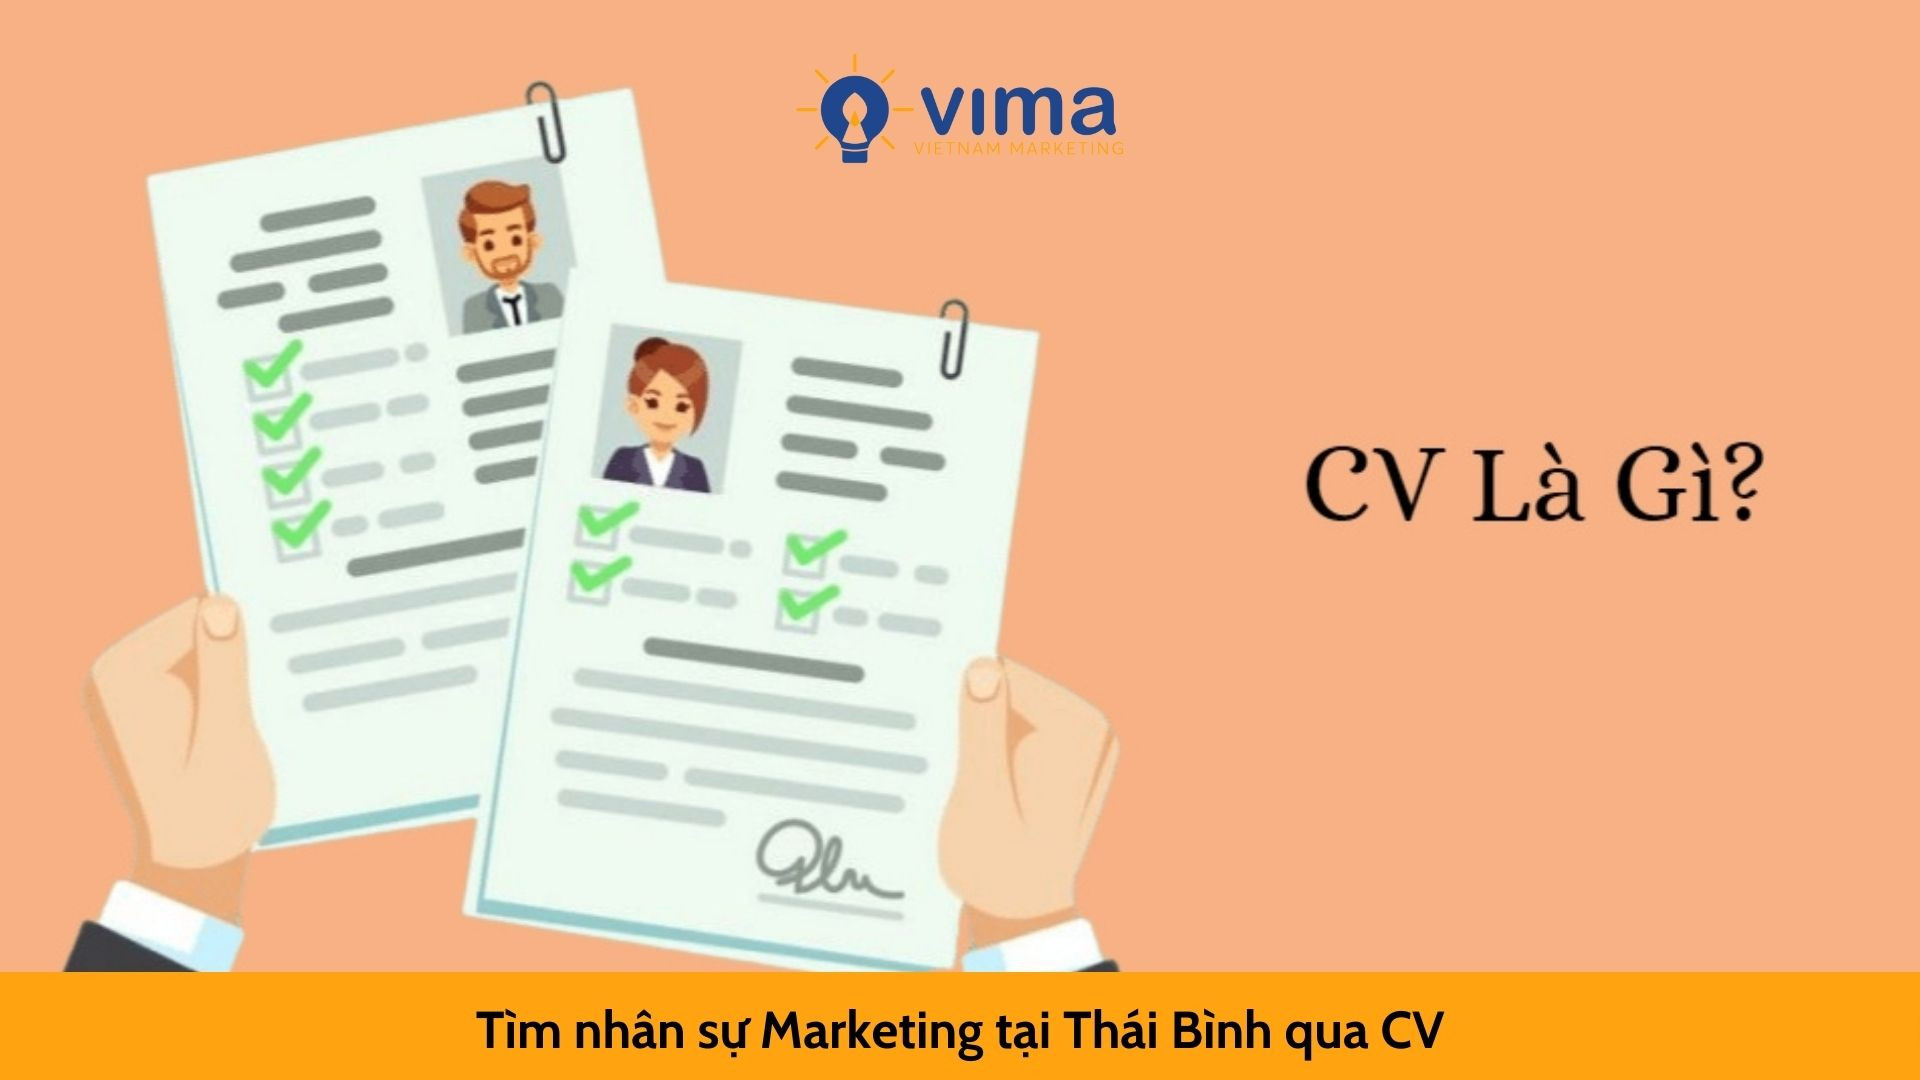 Tìm nhân sự Marketing tại Thái Bình qua CV